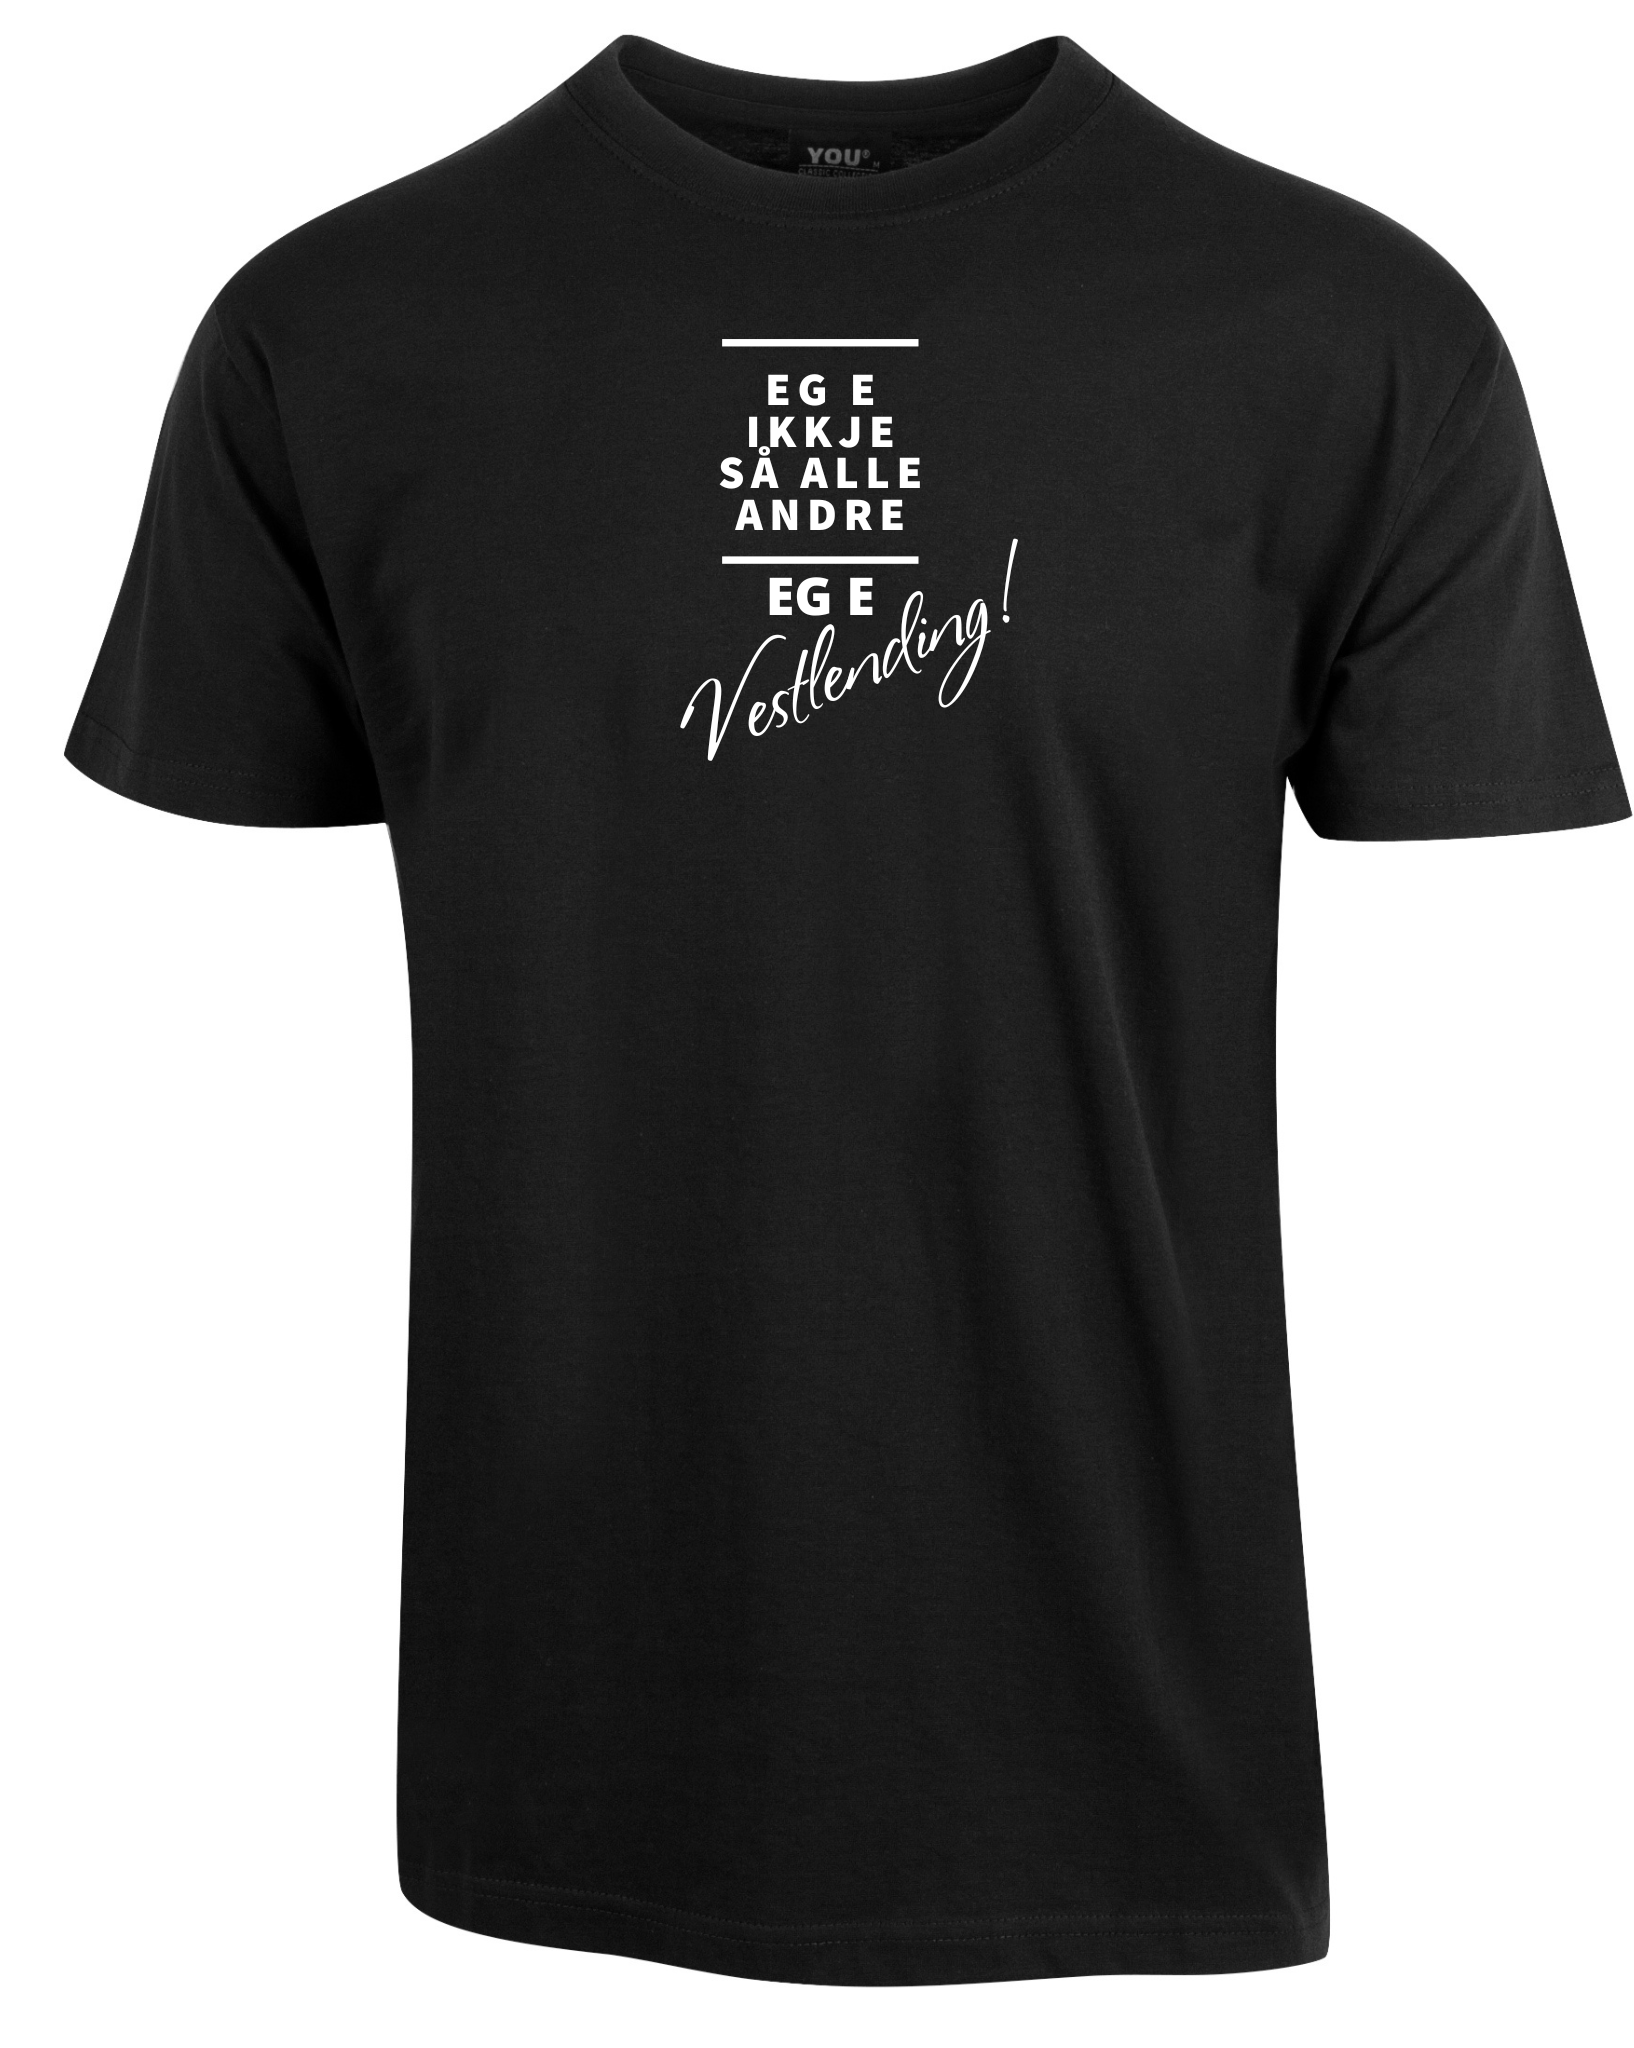 T-skjorte med artig tekst "Vestlending" - VOIS Design